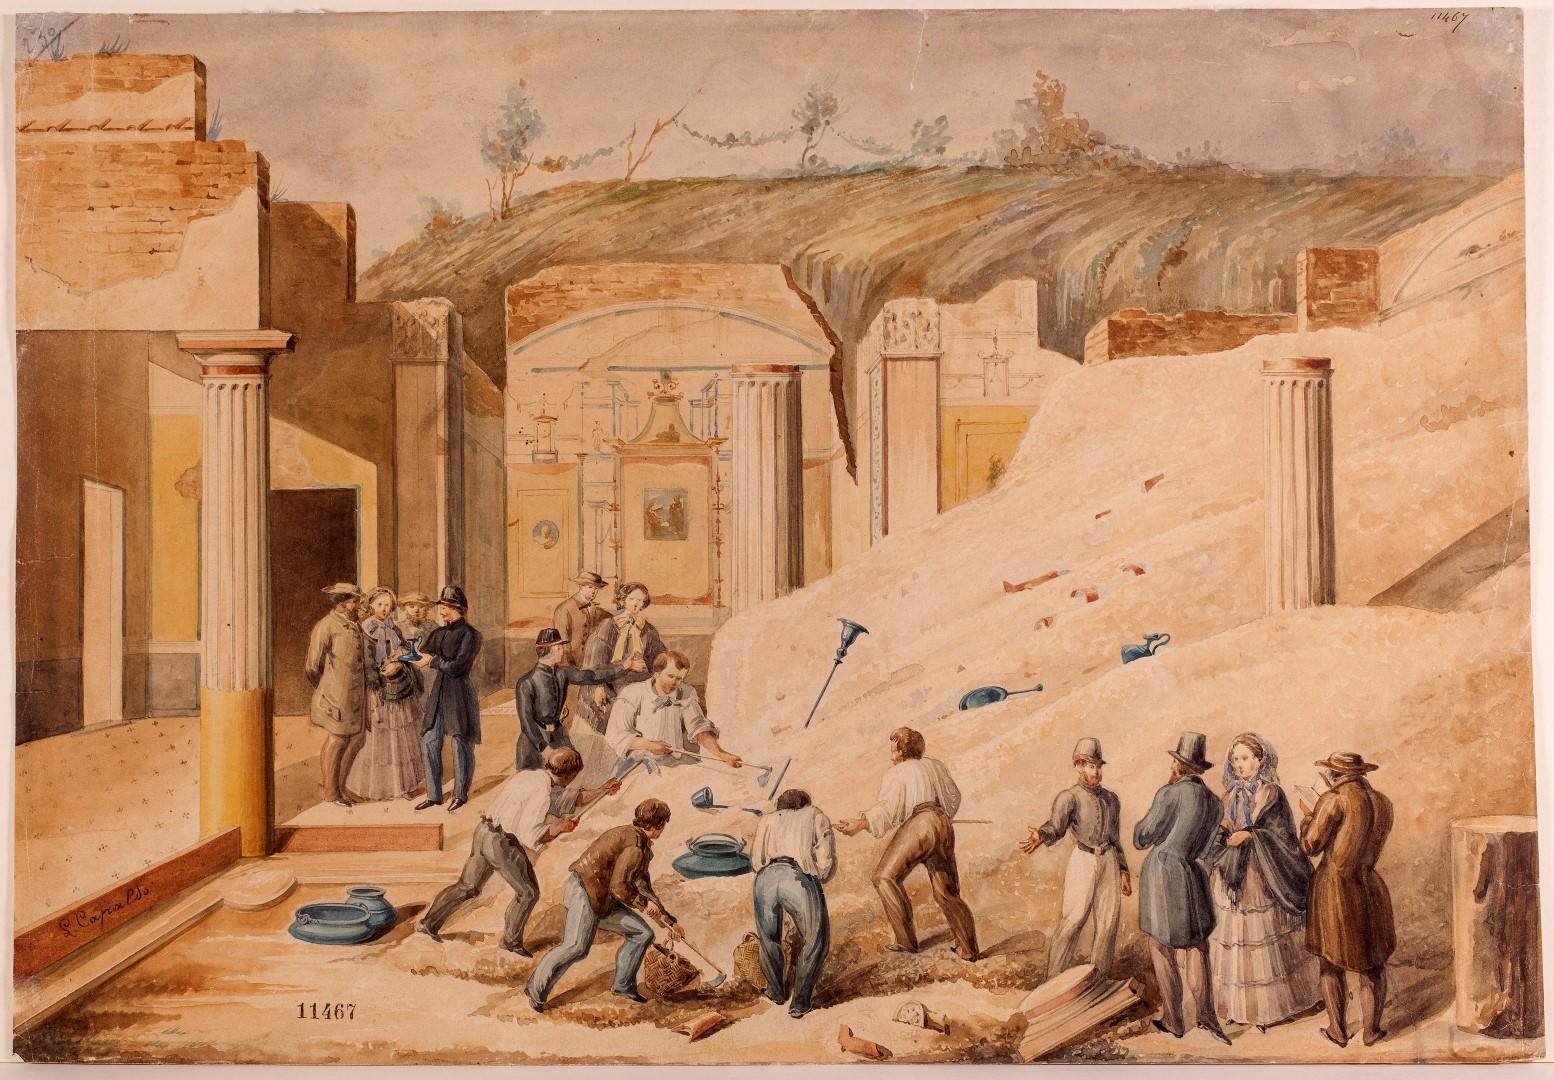 Dipinto ottocentesco che raffigura uno scavo archeologico a pompei, con persone al lavoro e altre a guarare